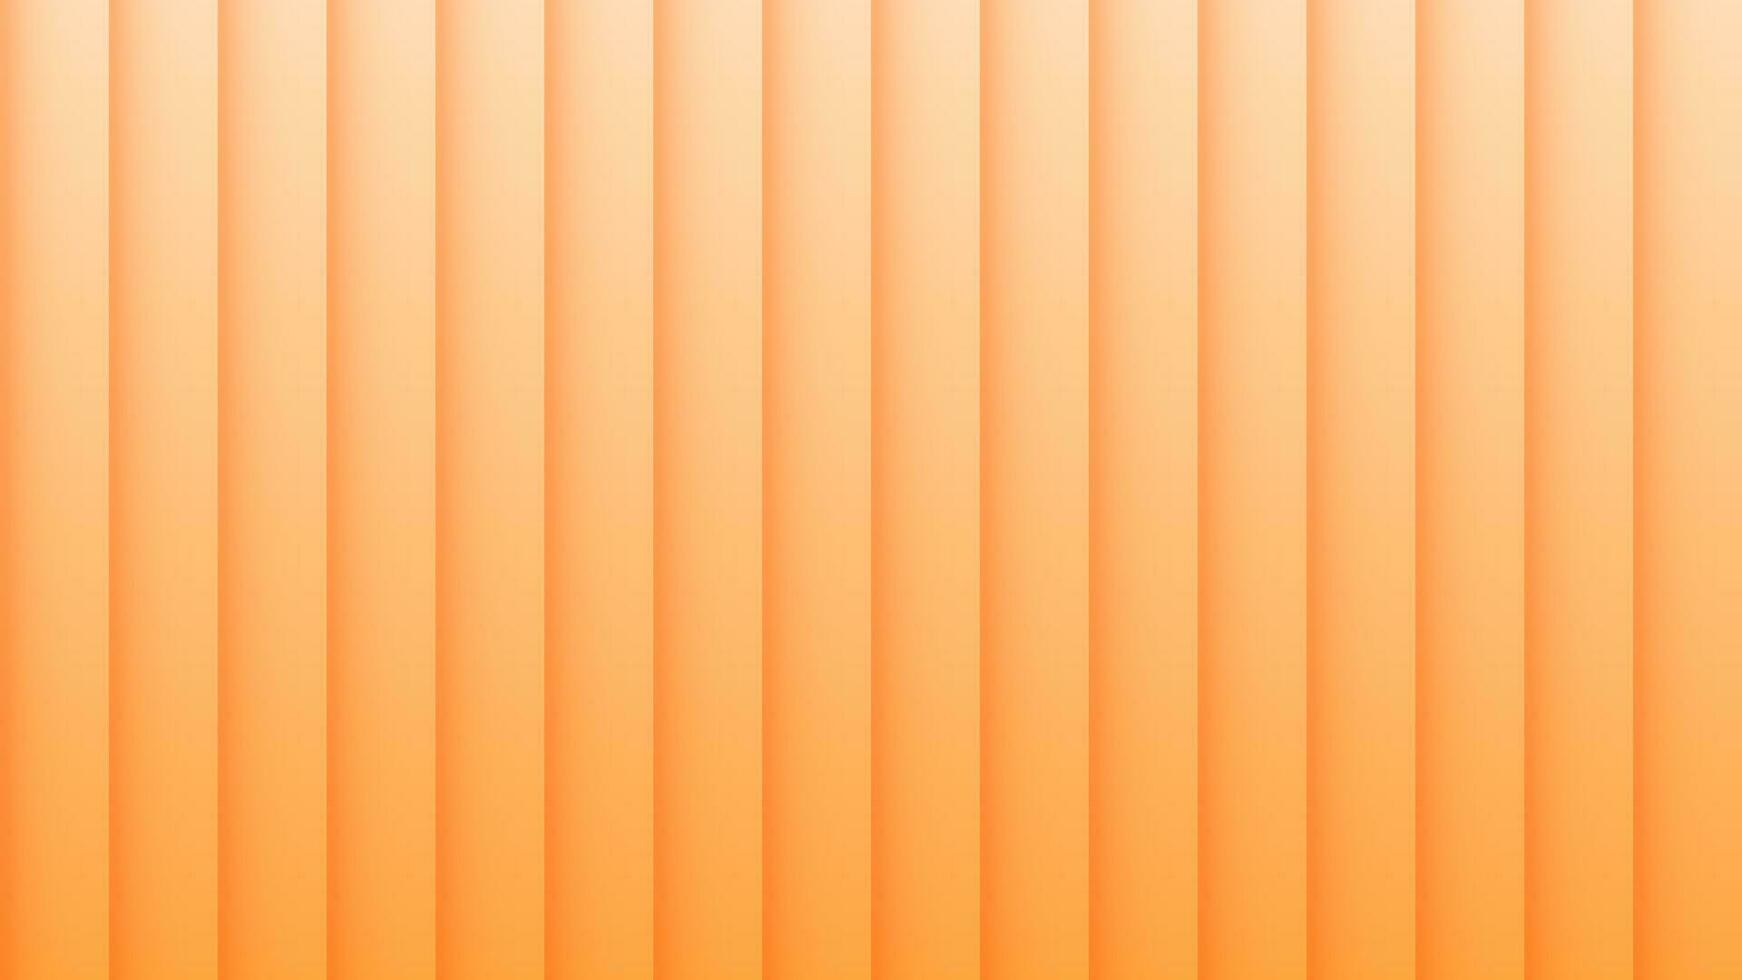 Vektor Illustration Orange Gelb Gradient Mauer Hintergrund gruppiert 3d rechteckig Objekte abstrakt